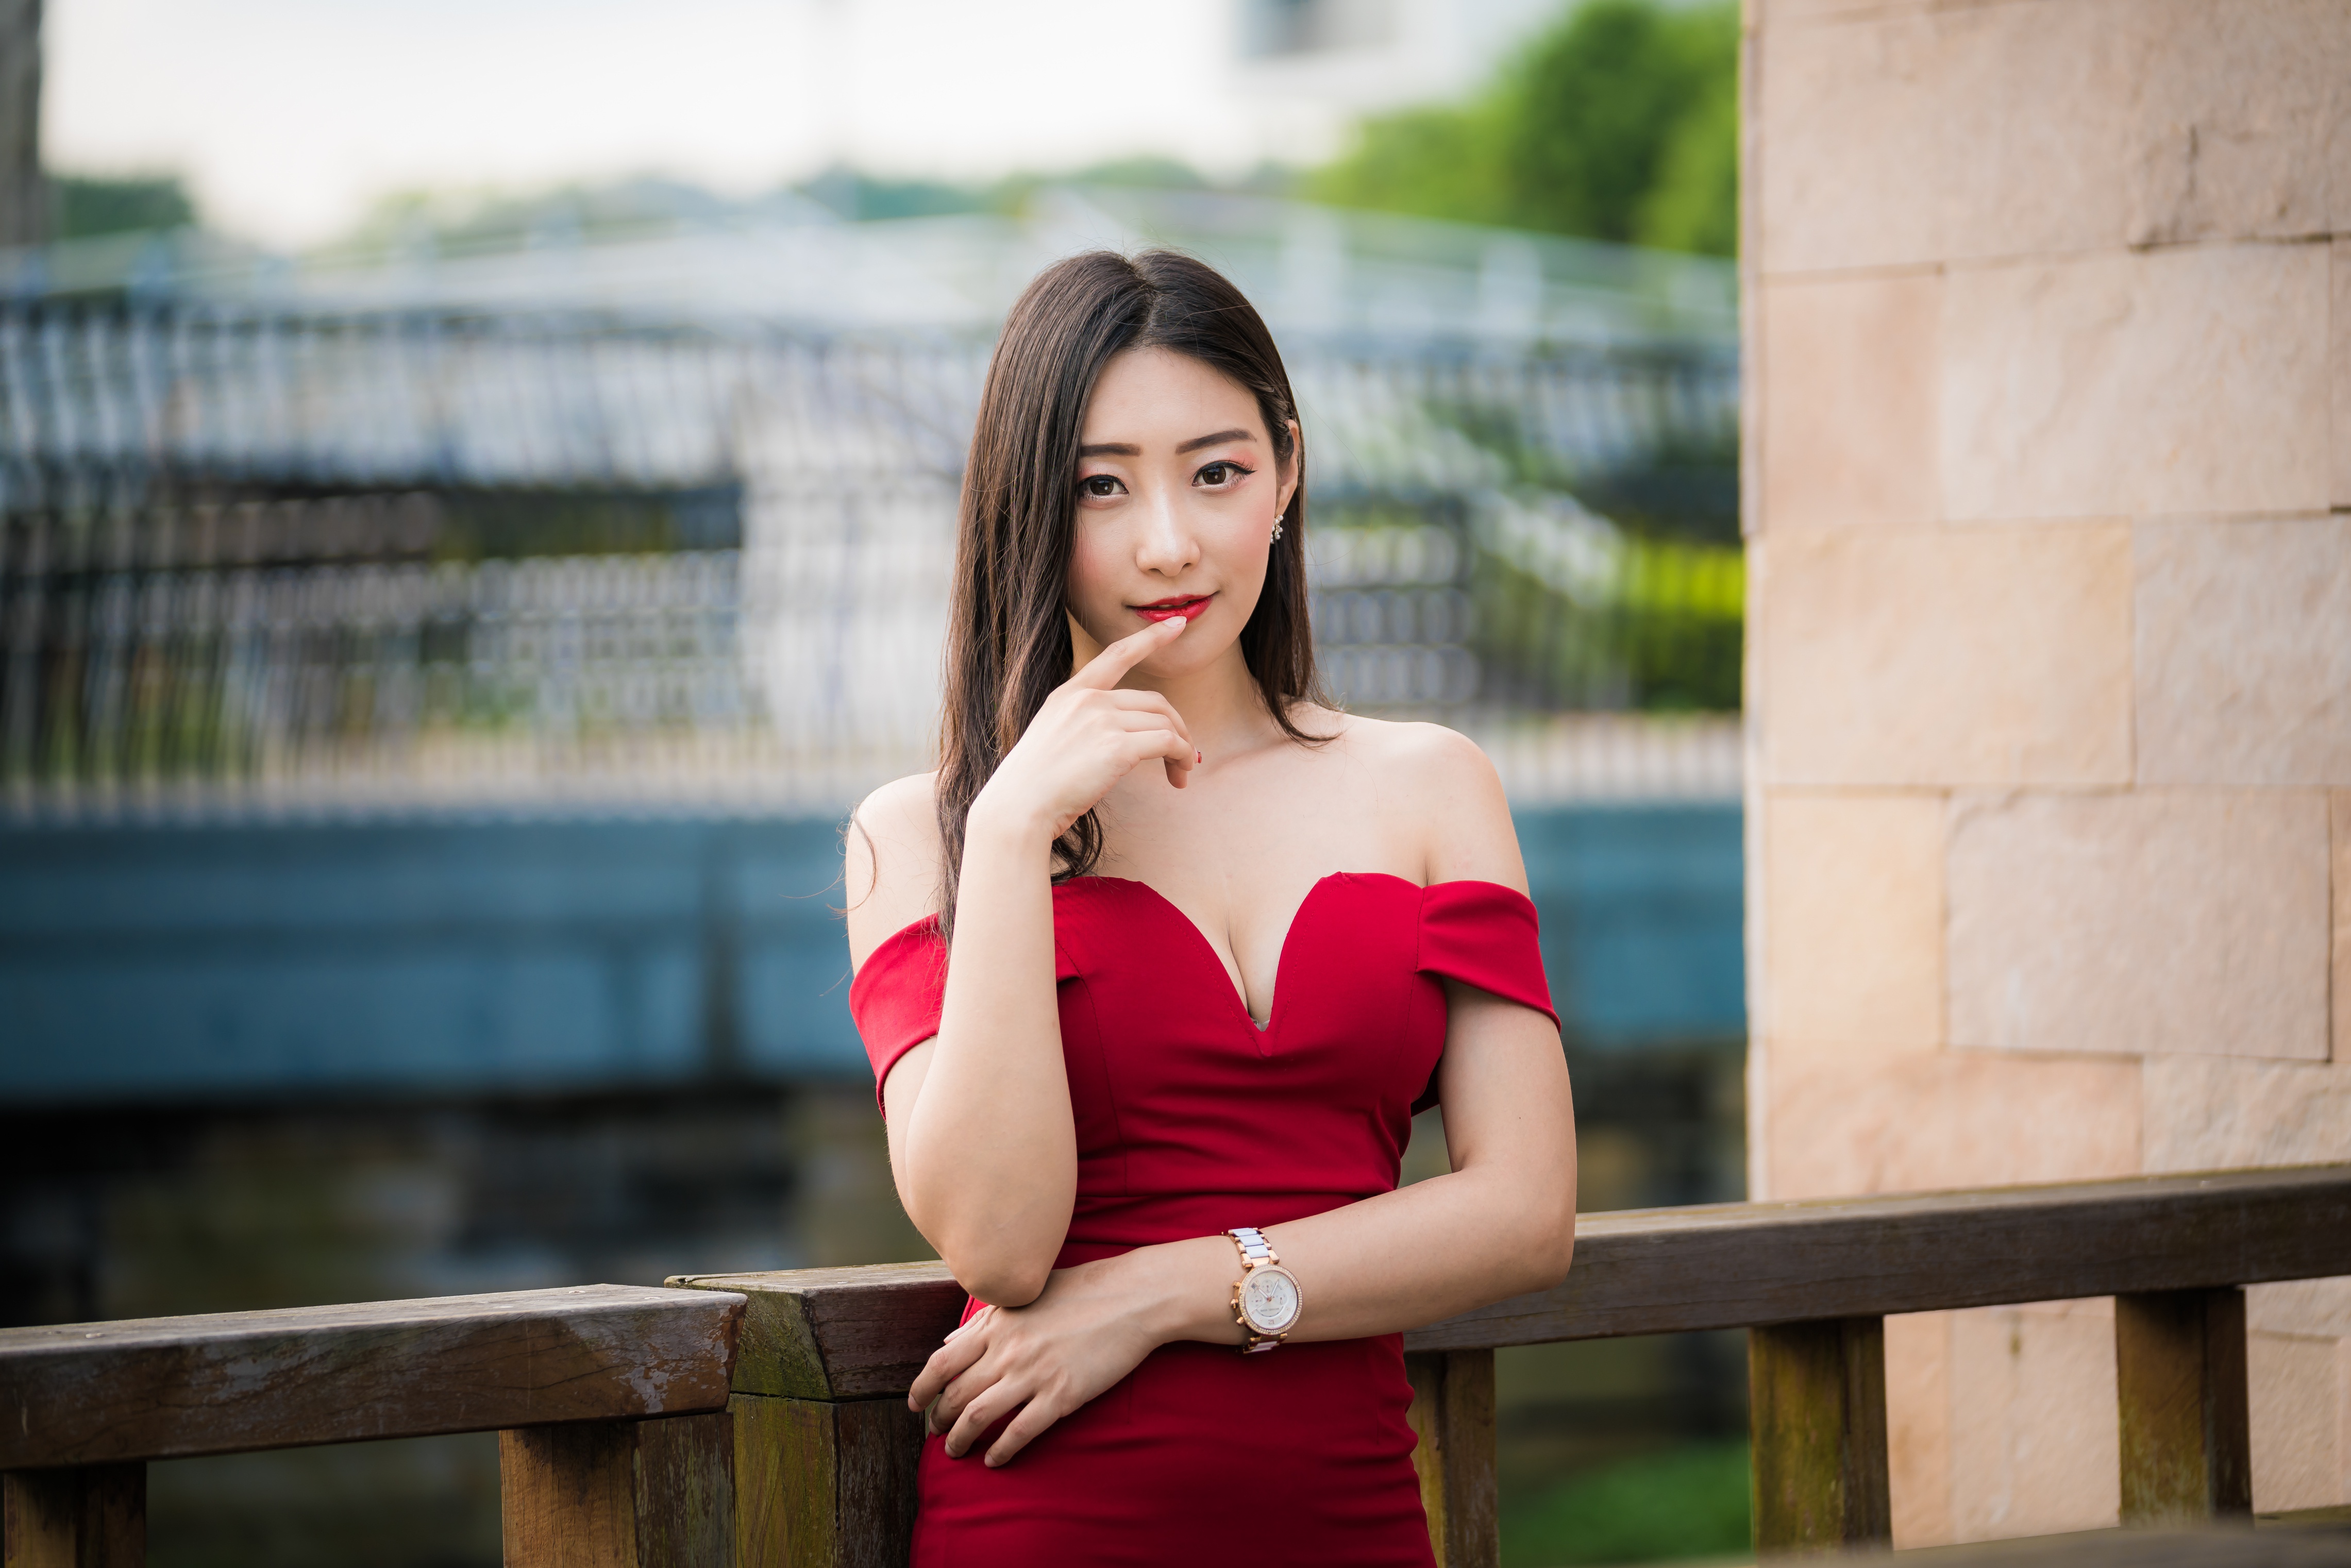 People 4562x3043 Asian women model railing red dress depth of field red lipstick long hair brunette wristwatch earring fence stone wall